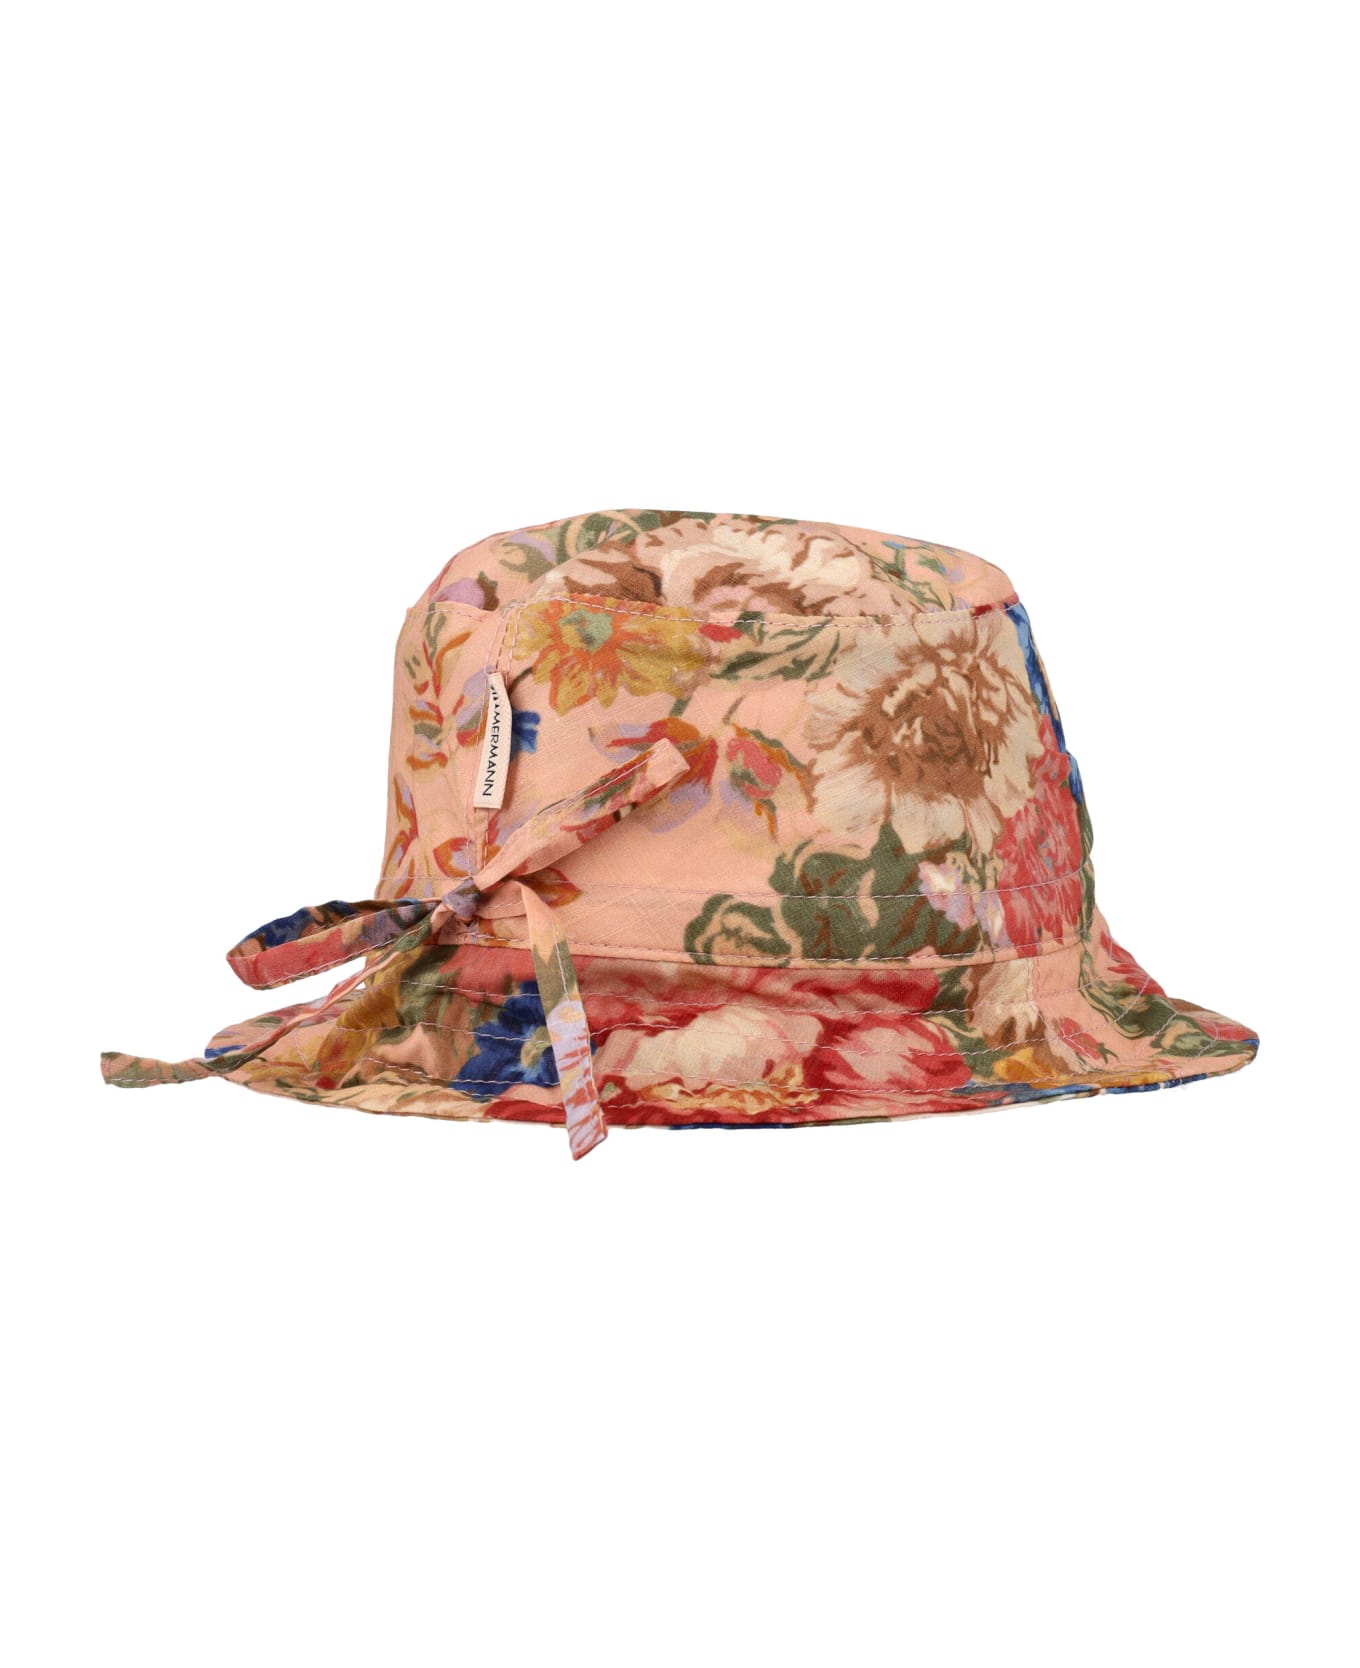 Zimmermann Bucket Hat - PINK FLORAL